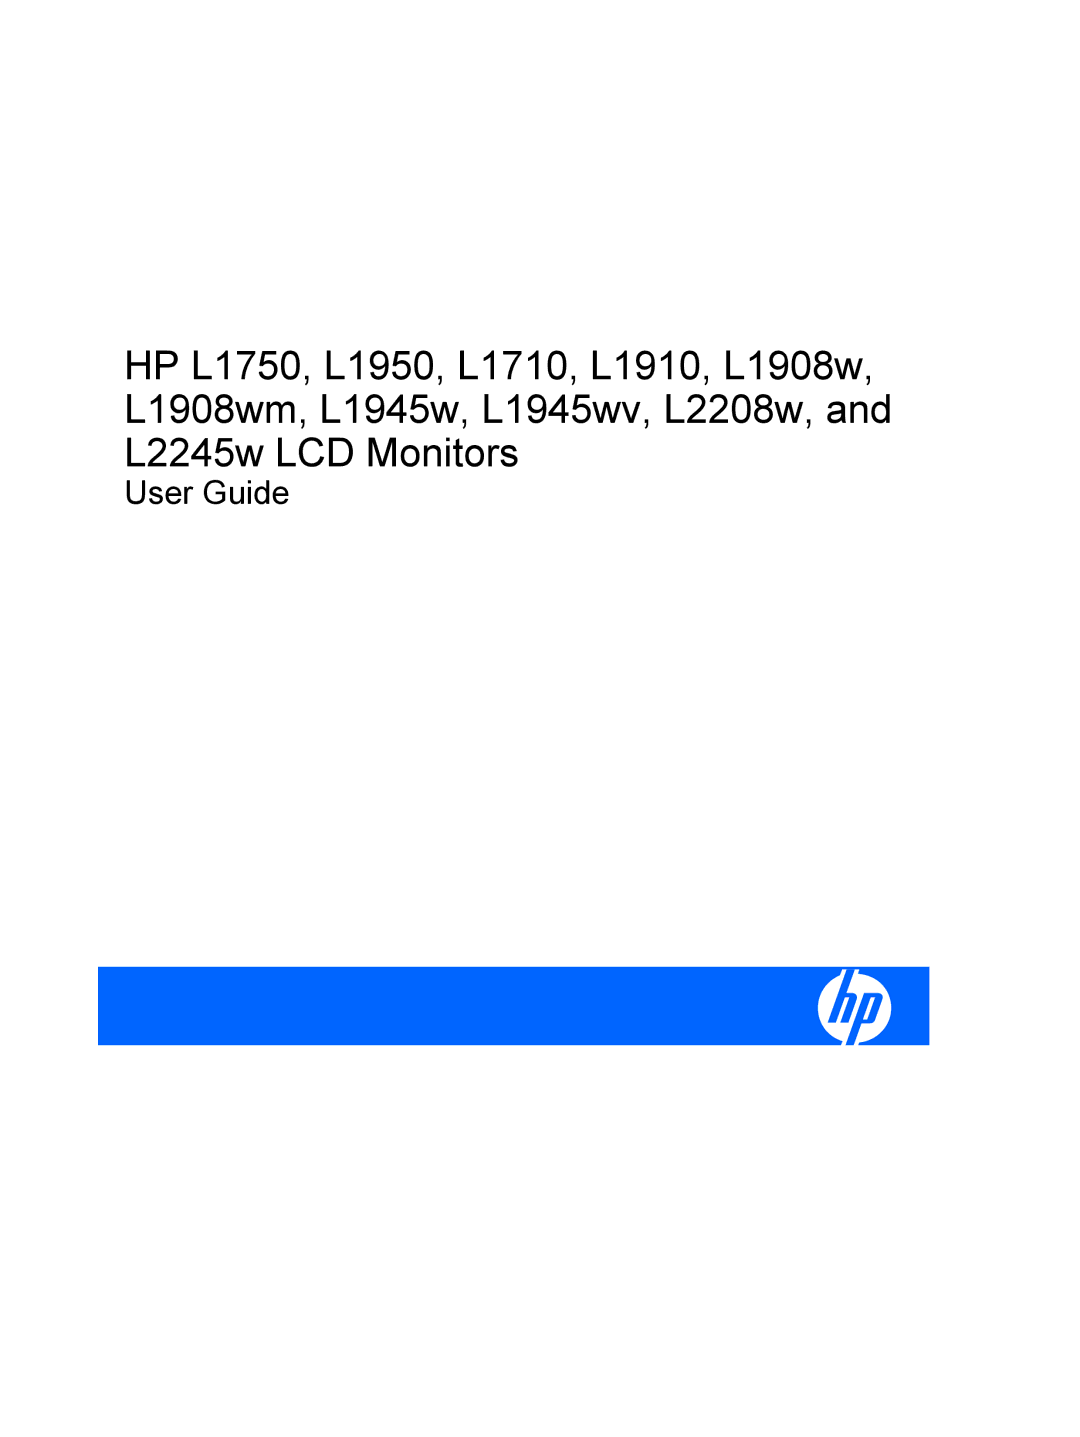 HP L2208W, L2245W, L1908WM, L1950, L1945WV, L1750, L1910 manual User Guide 